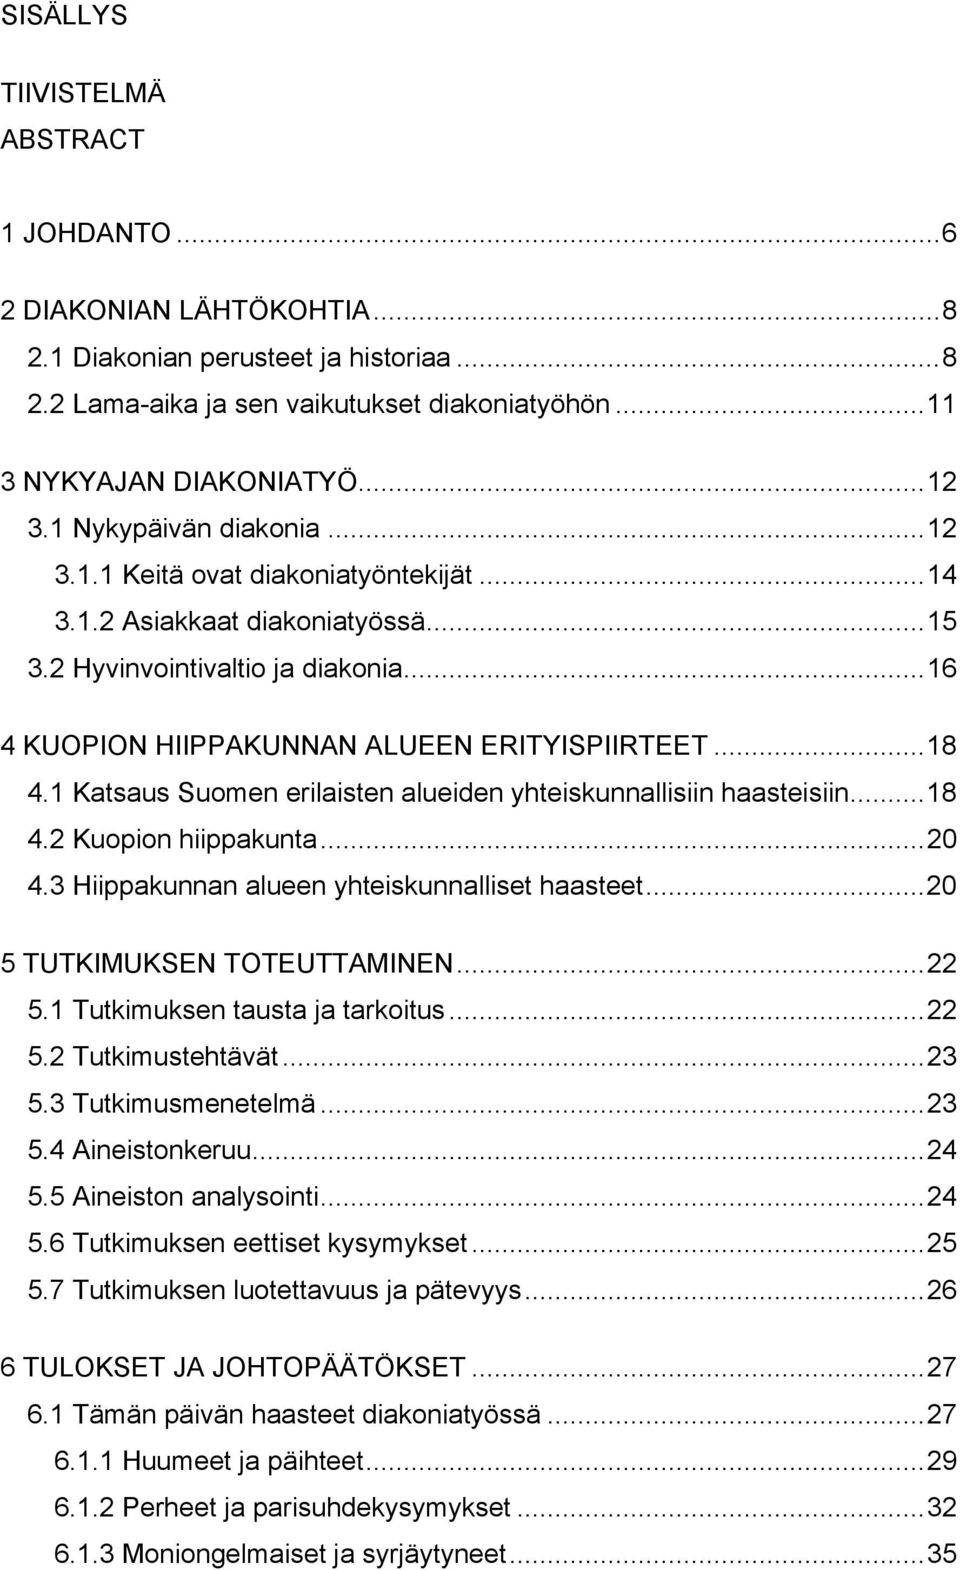 1 Katsaus Suomen erilaisten alueiden yhteiskunnallisiin haasteisiin...18 4.2 Kuopion hiippakunta...20 4.3 Hiippakunnan alueen yhteiskunnalliset haasteet...20 5 TUTKIMUKSEN TOTEUTTAMINEN...22 5.